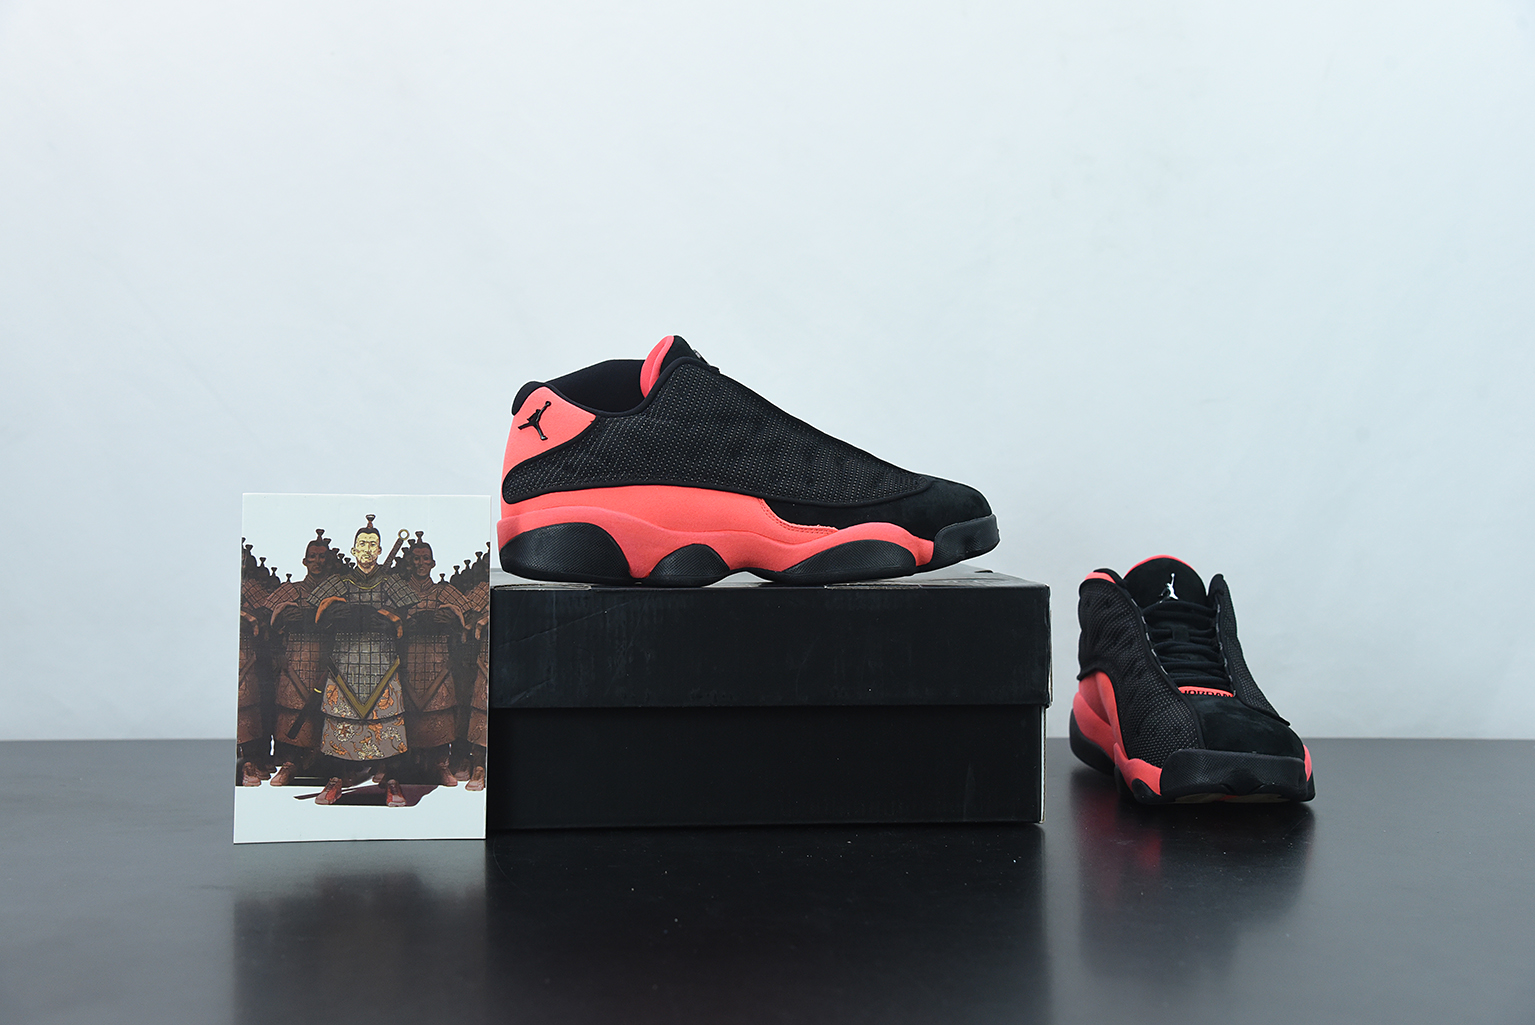 Air Jordan 13 Low NRG Clot x Air Jordan - Stone Basketball Shoes/Sneakers AT3102-200 (US 9)